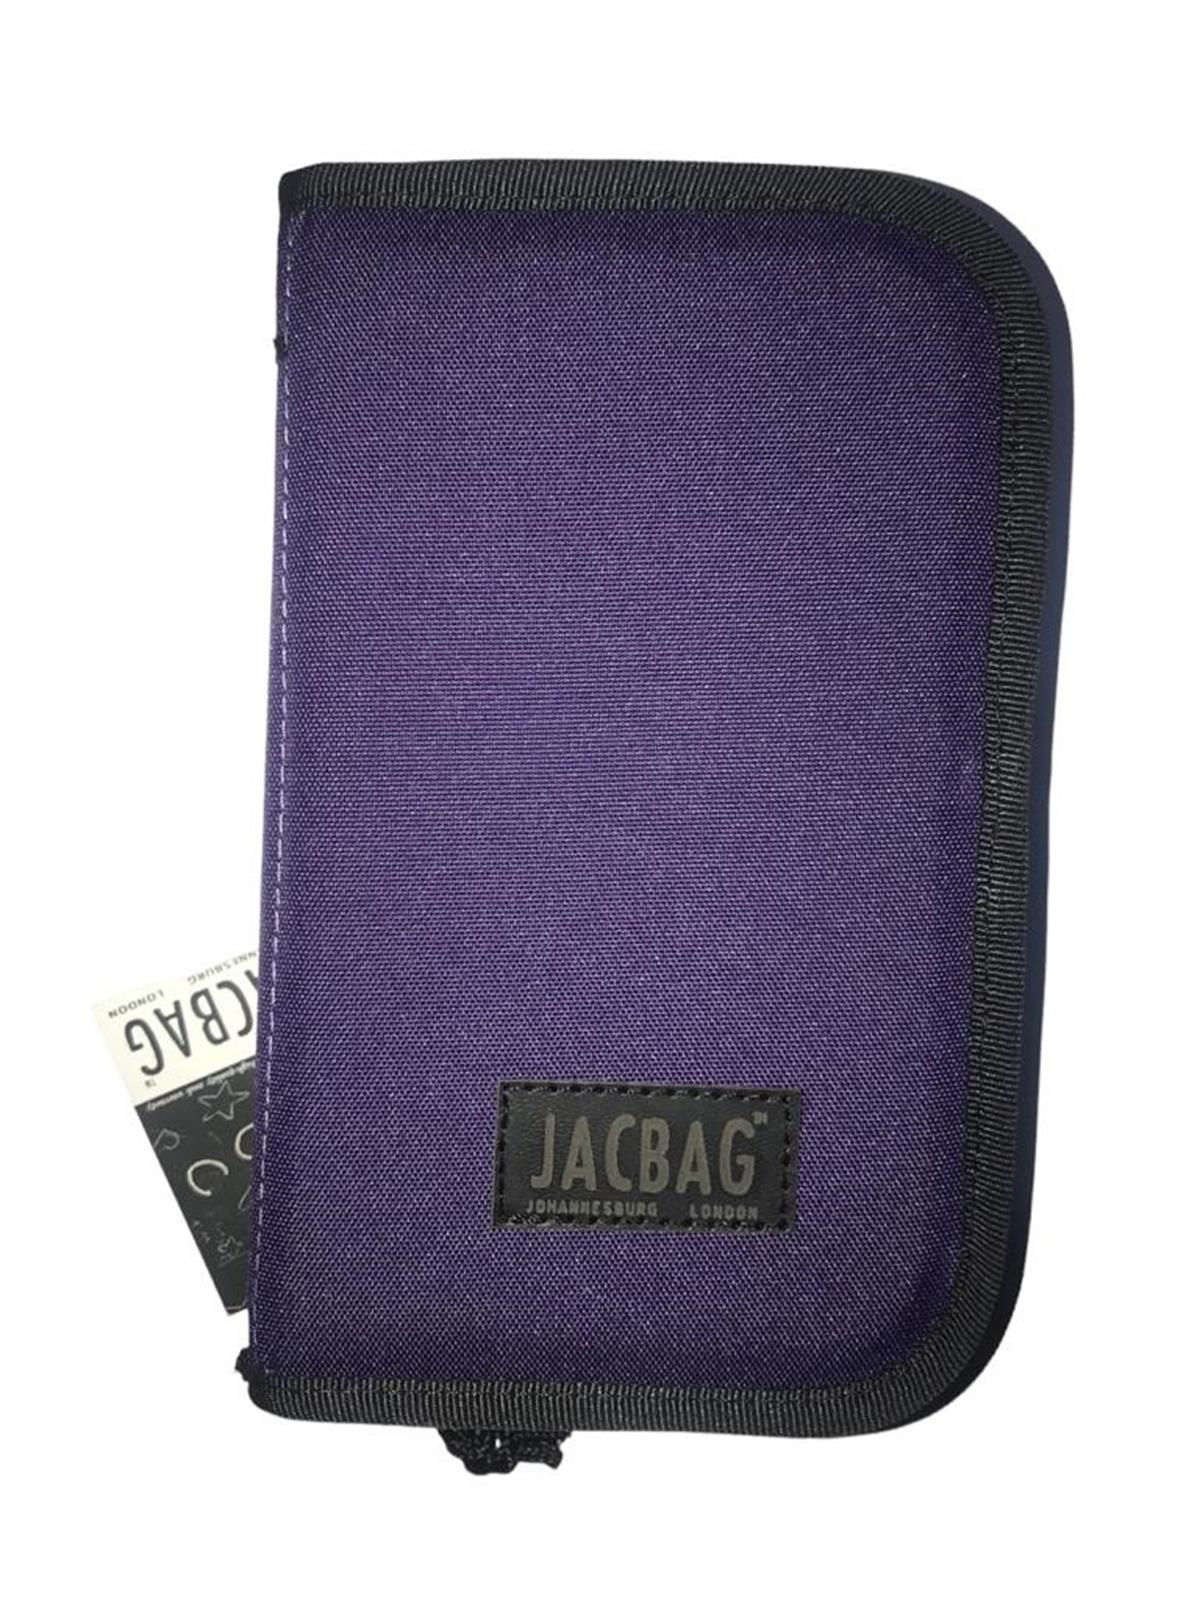 Jacbag Kalem Kutusu Cover JAC-23 Ürününde Sana Özel İndirimler Seni  Bekliyor!